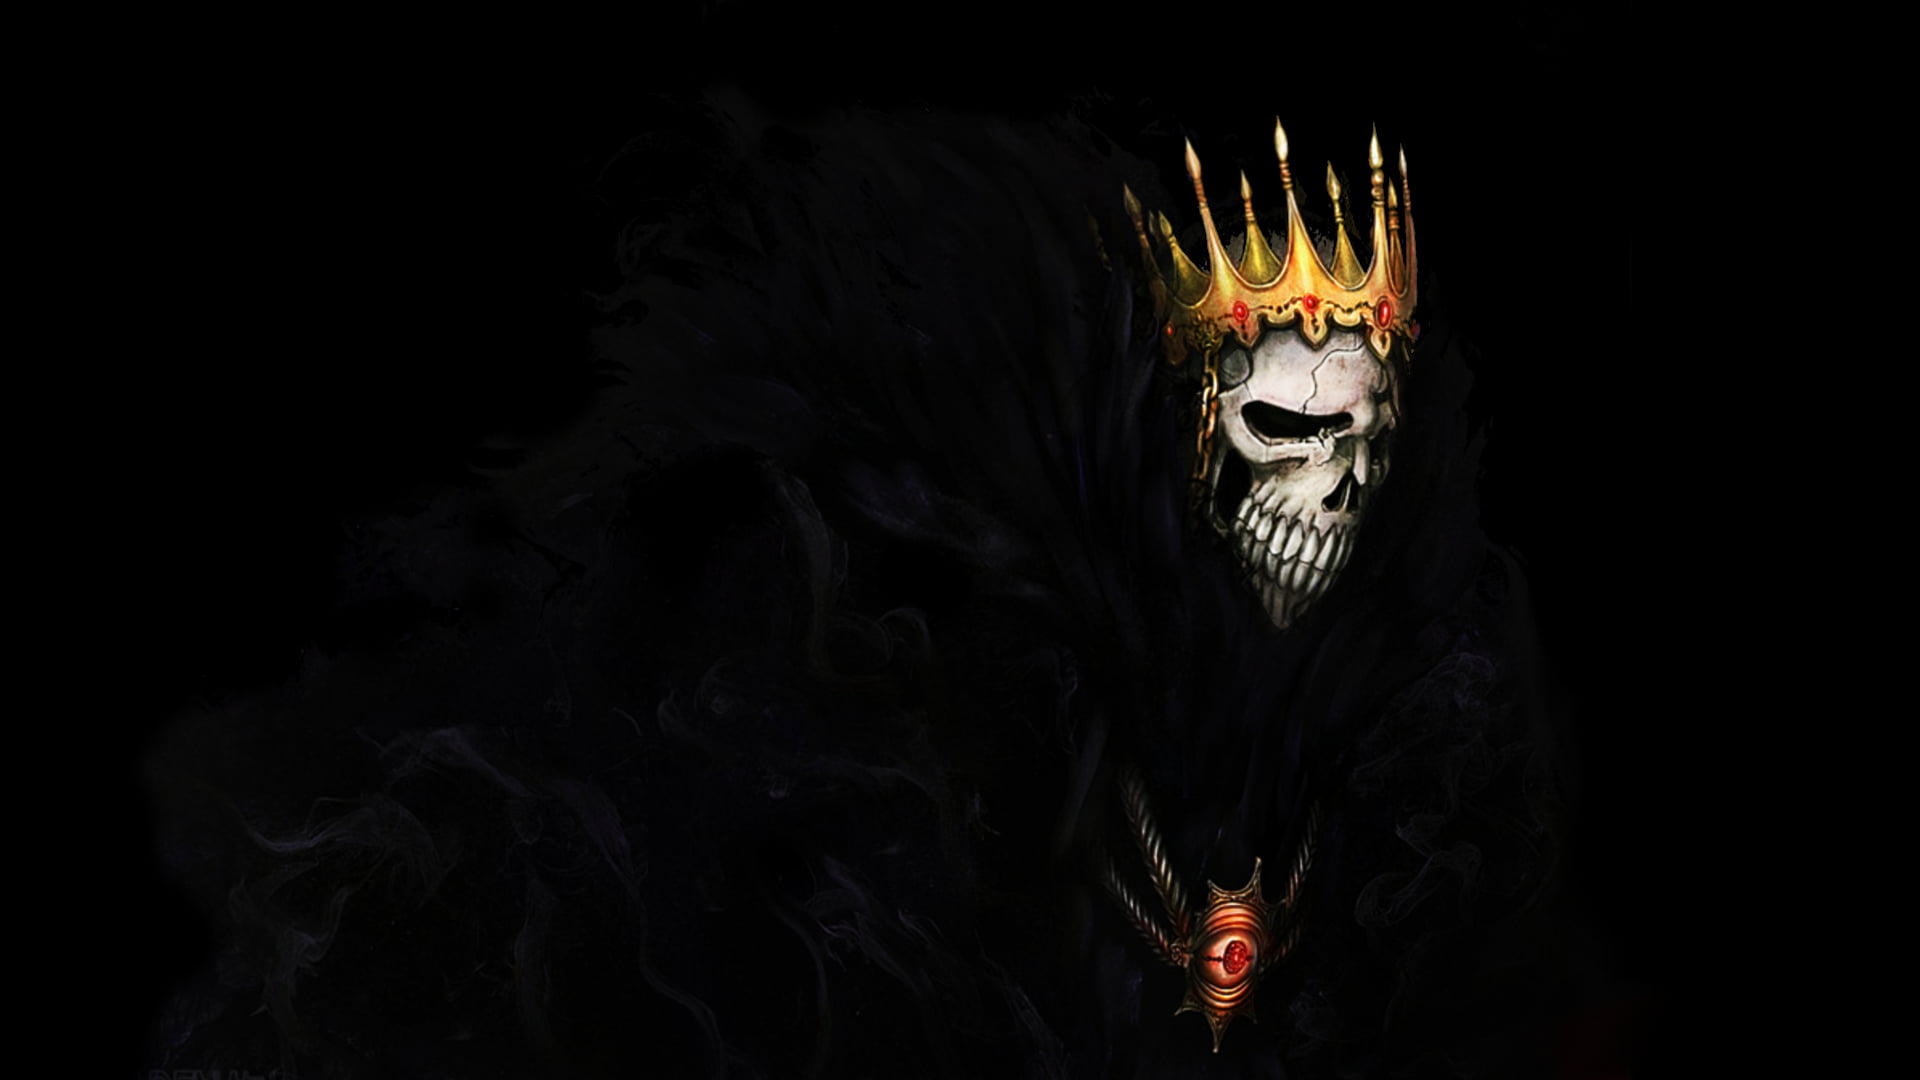 digital art of skull wearing crown